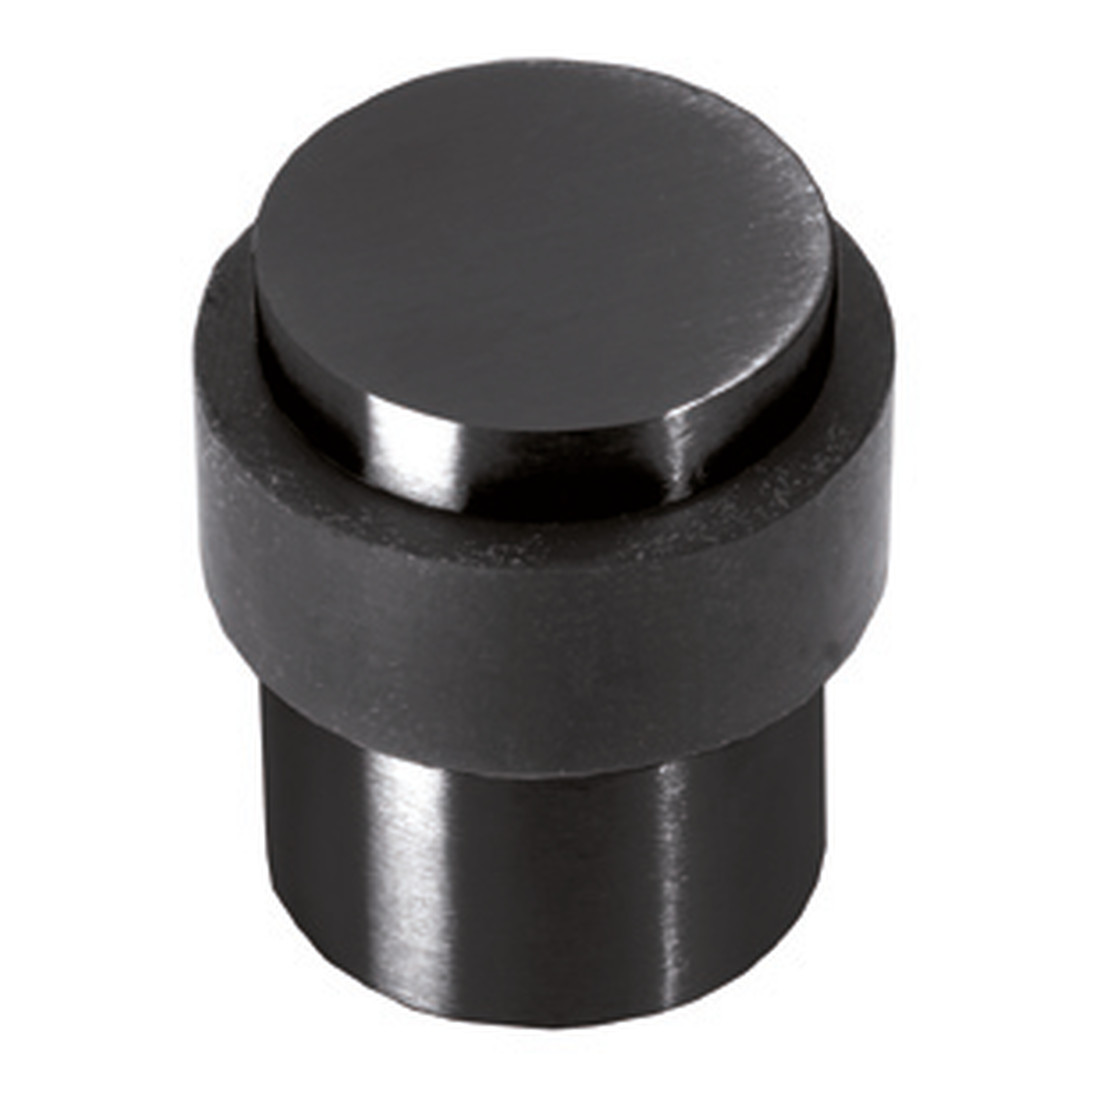 Door stopper, black, for floor mounting, ø 29mm, universal screw